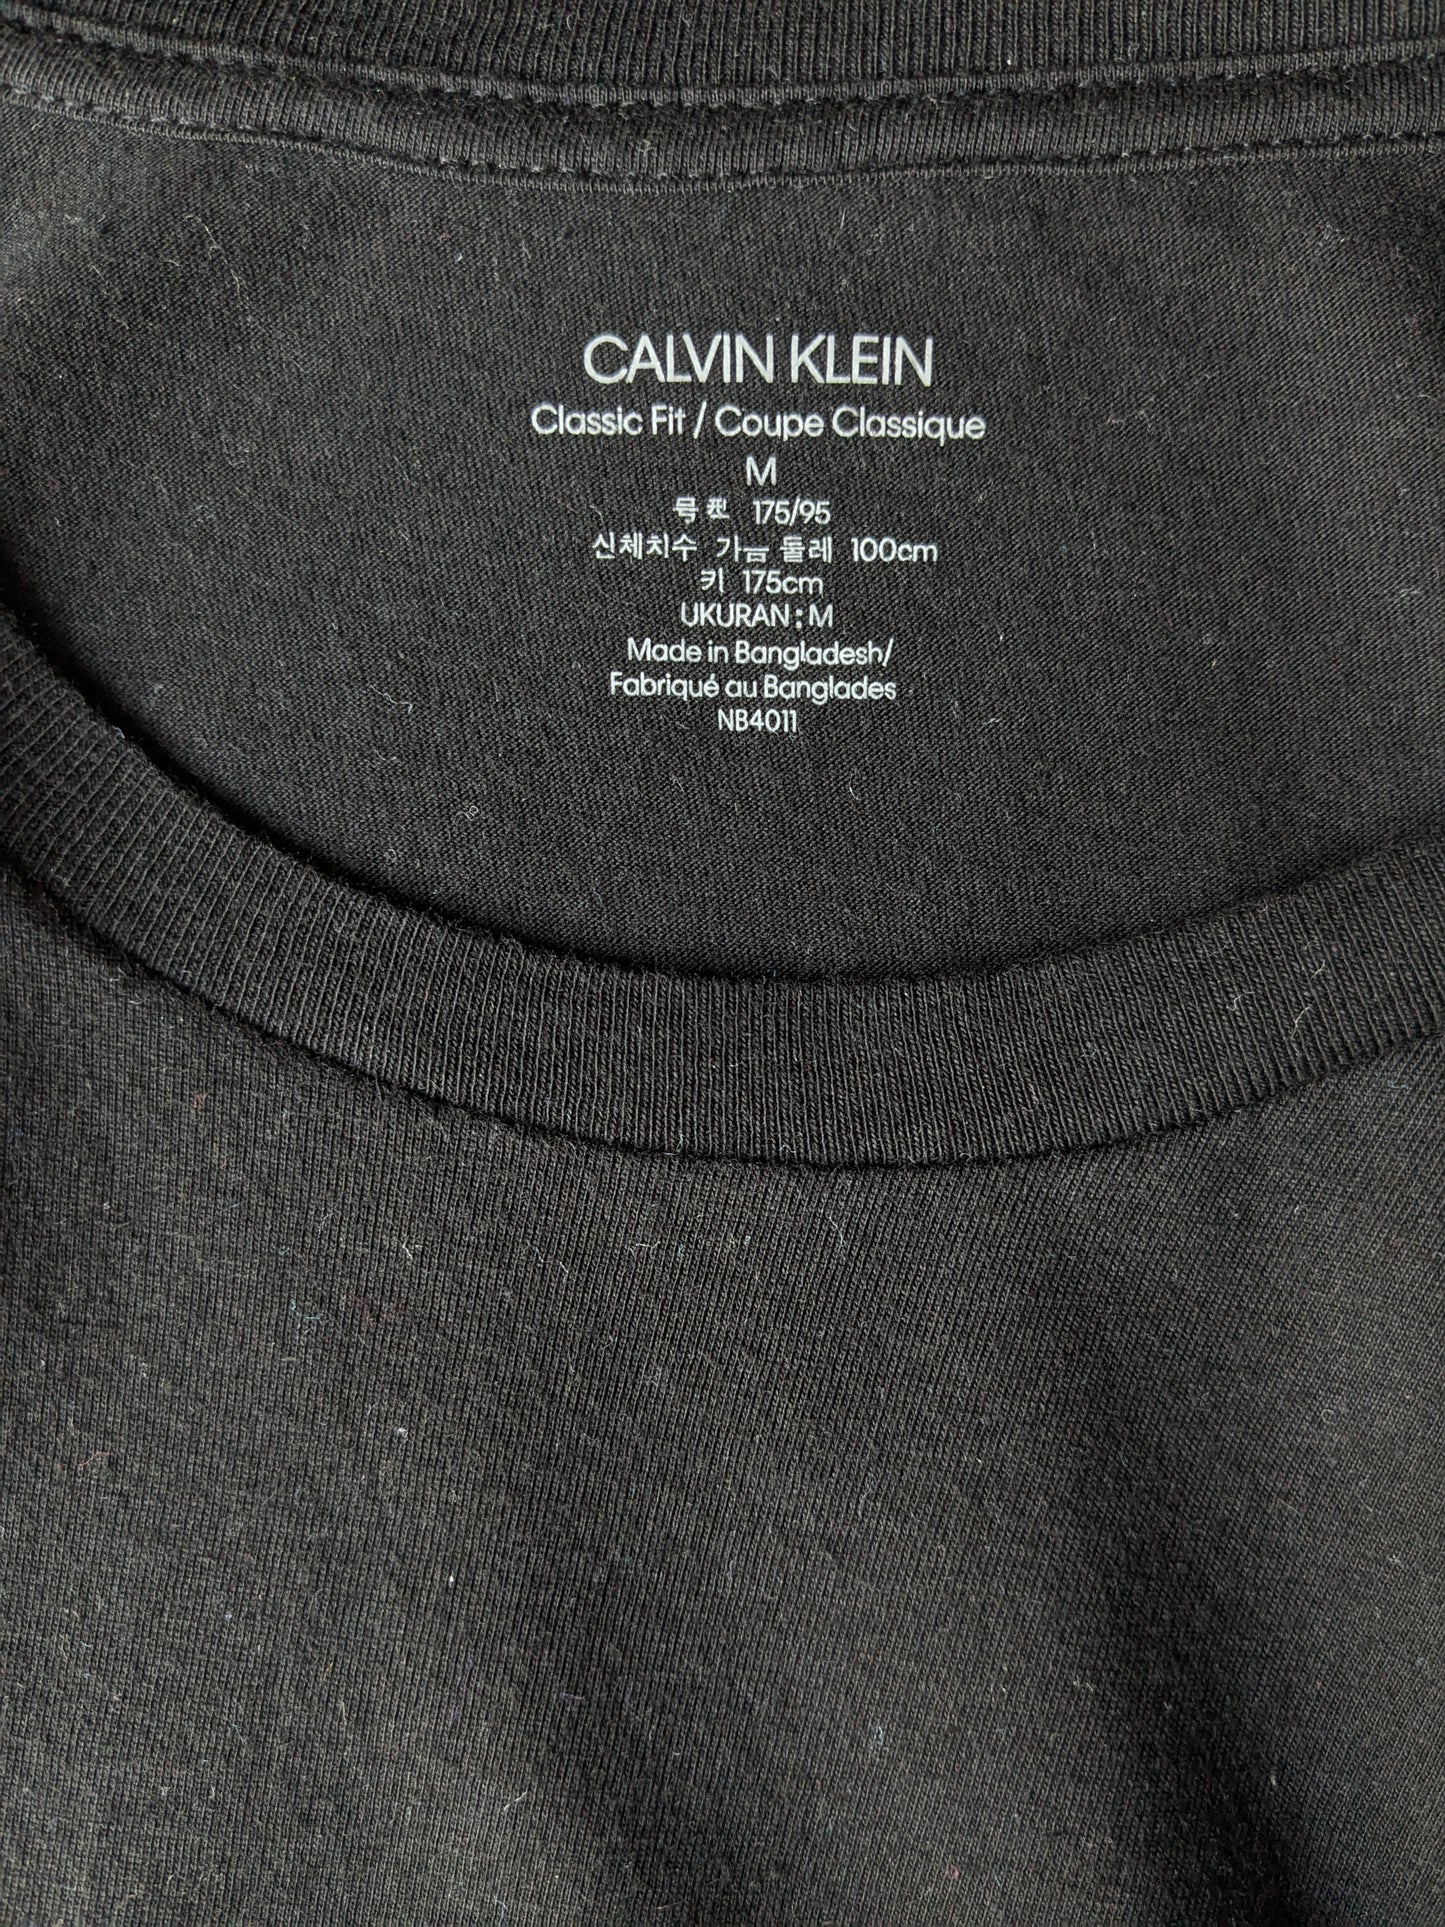 Calvin kleines Hemd. Schwarz gefärbt. Größe M.